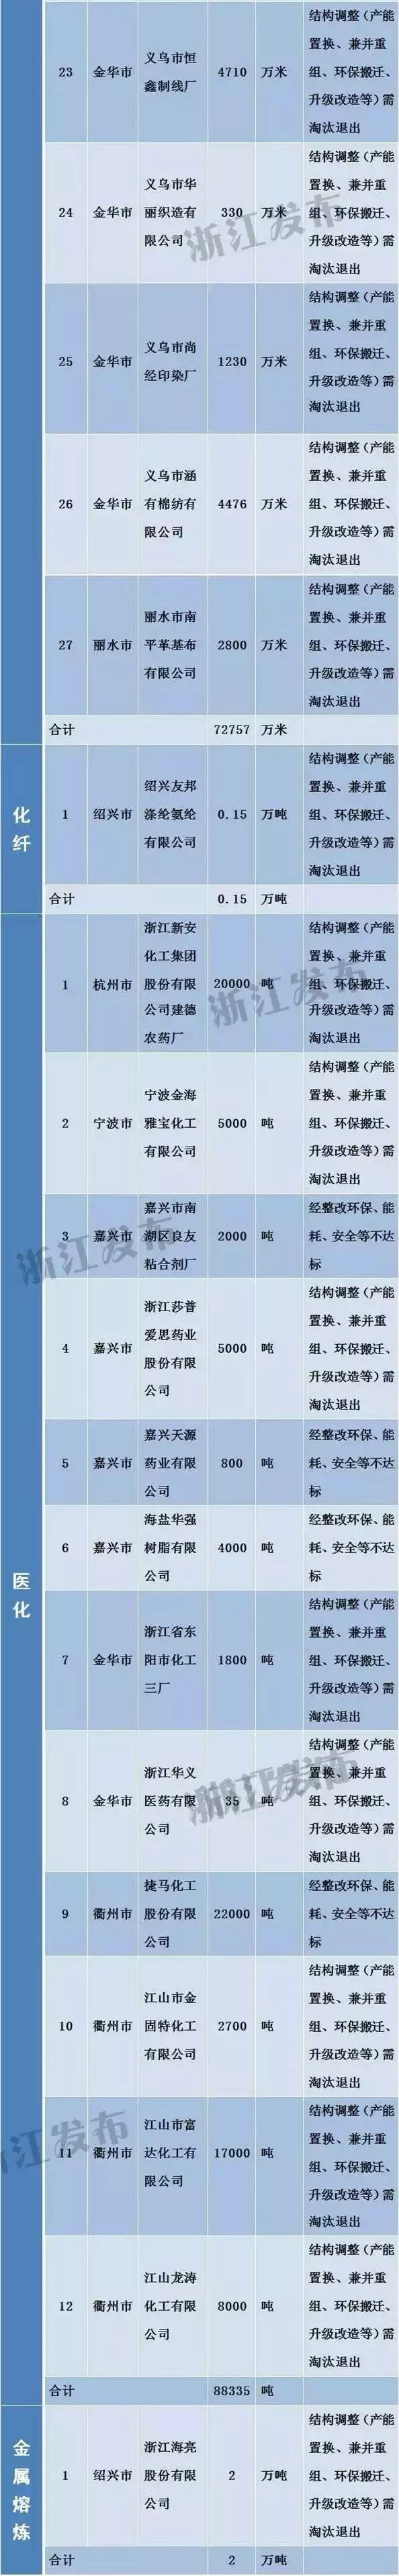 浙江工业经济转型升级之路 184家需淘汰落后和过剩产能的企业名单公布